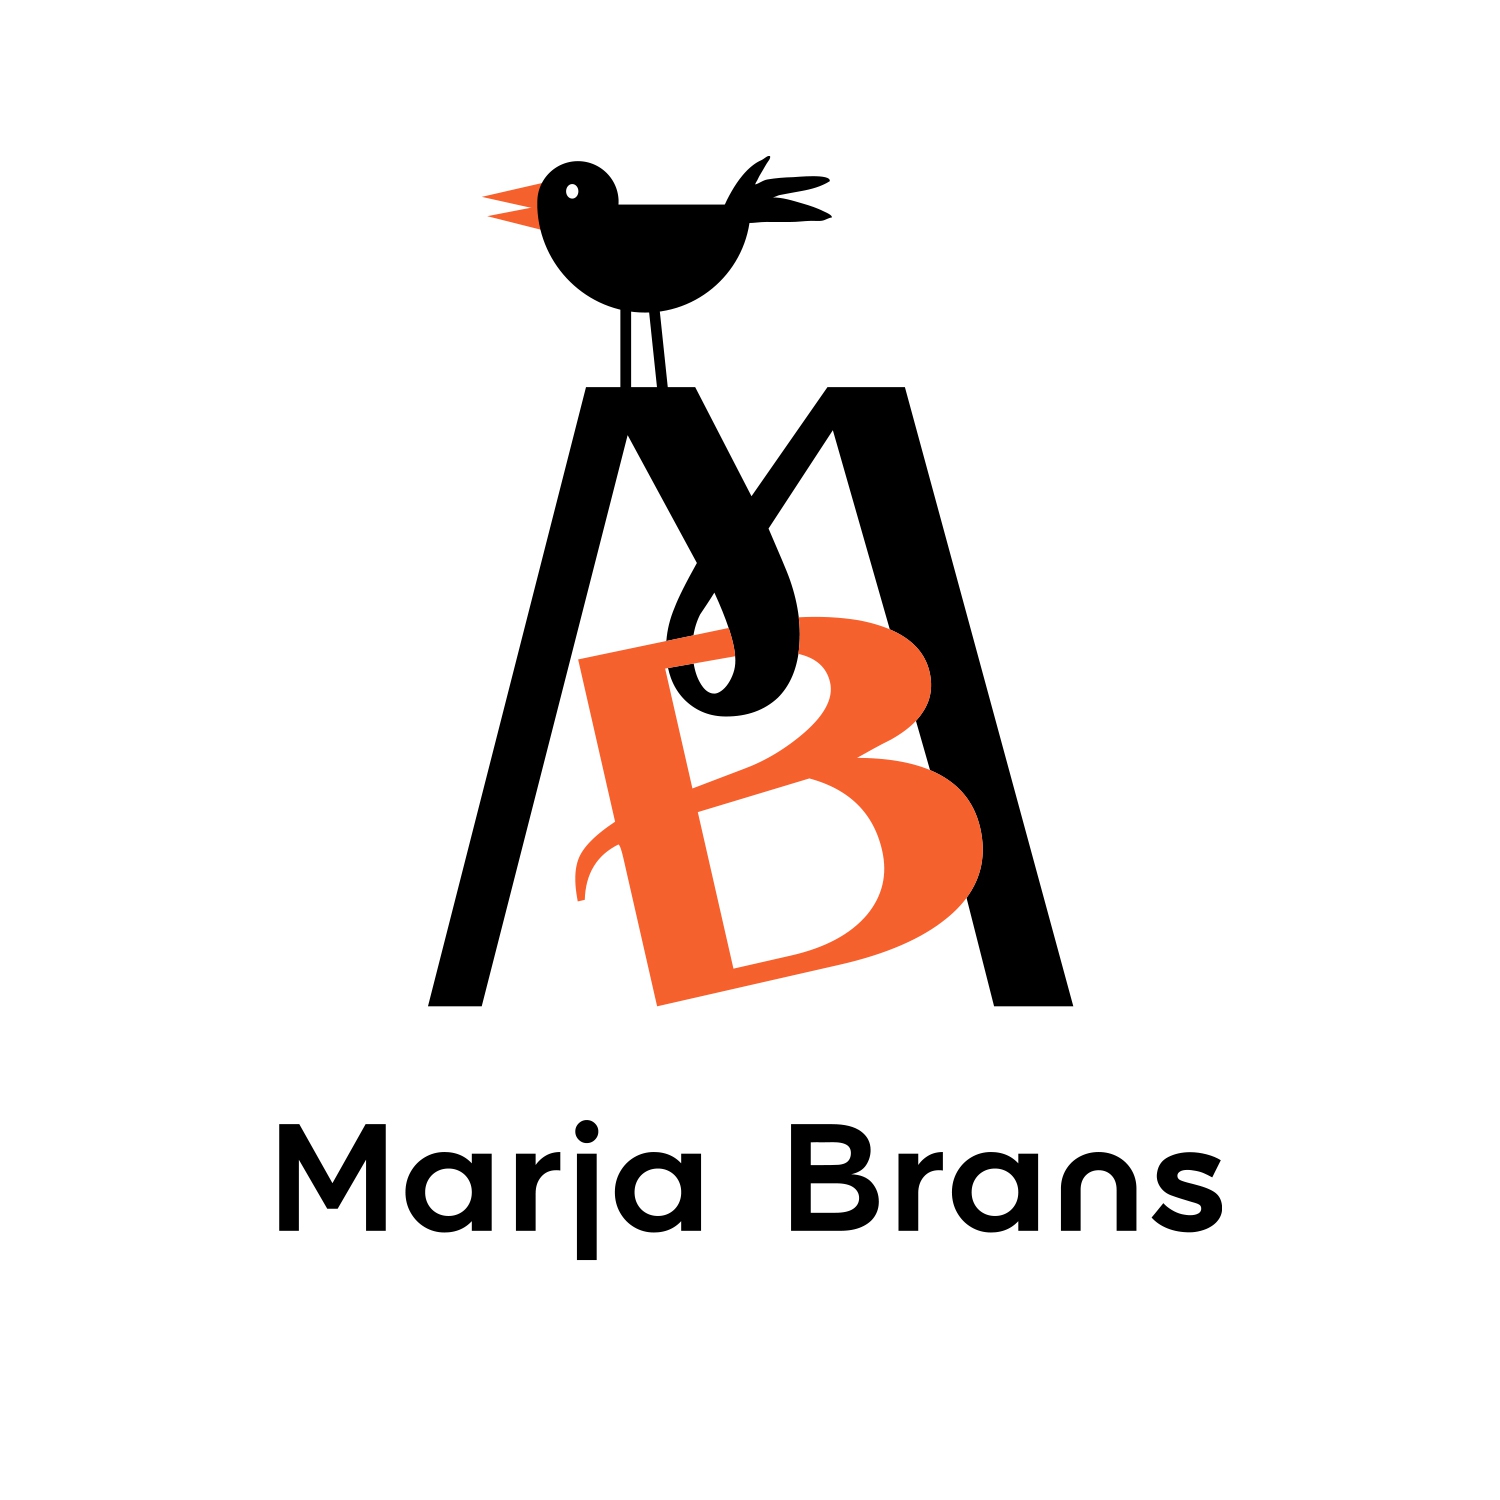 Mb logo